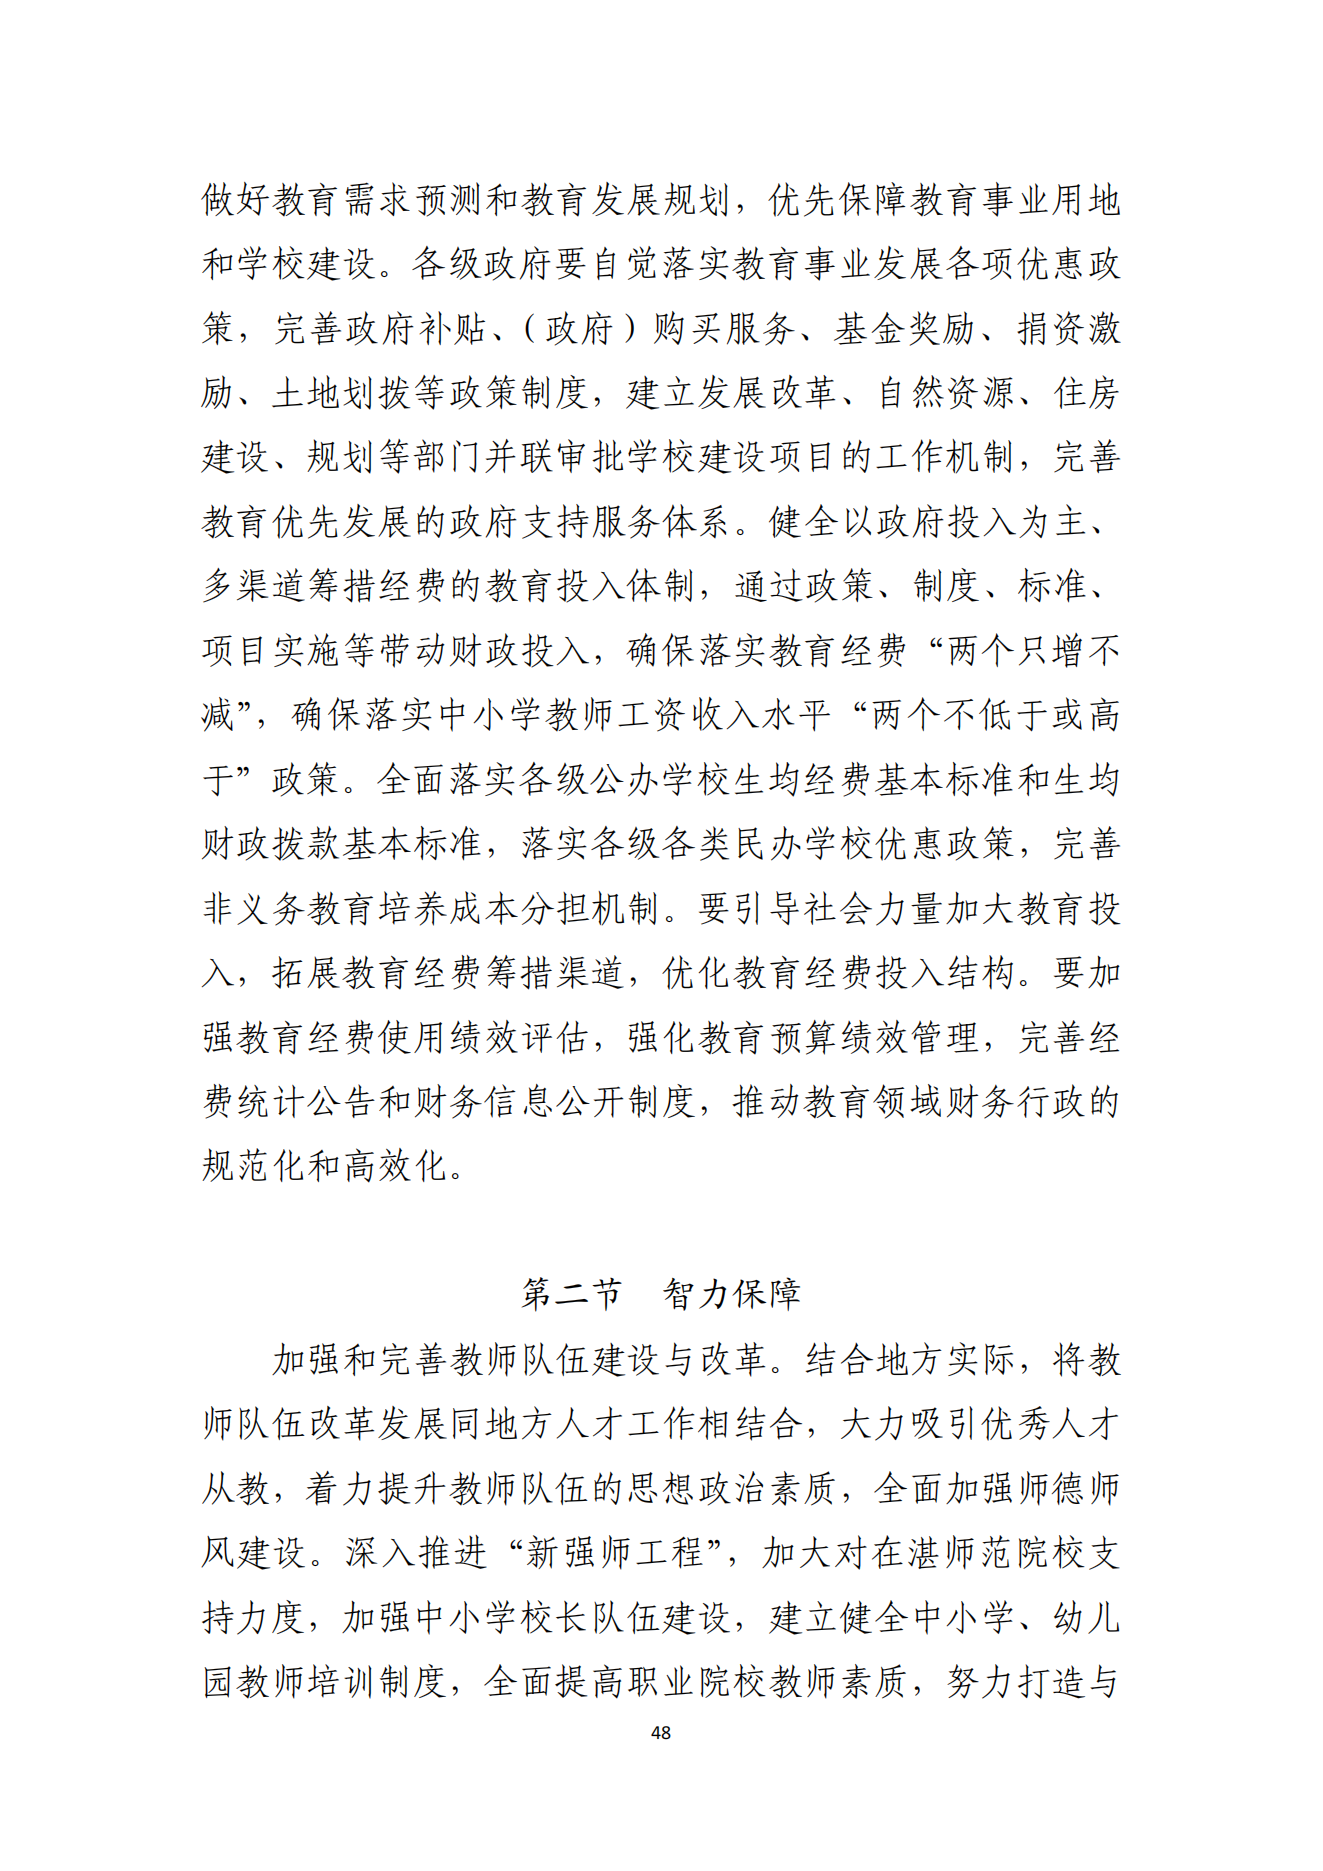 湛江市人民政府办公室关于印发湛江市教育发展“十四五”规划的通知_47.png